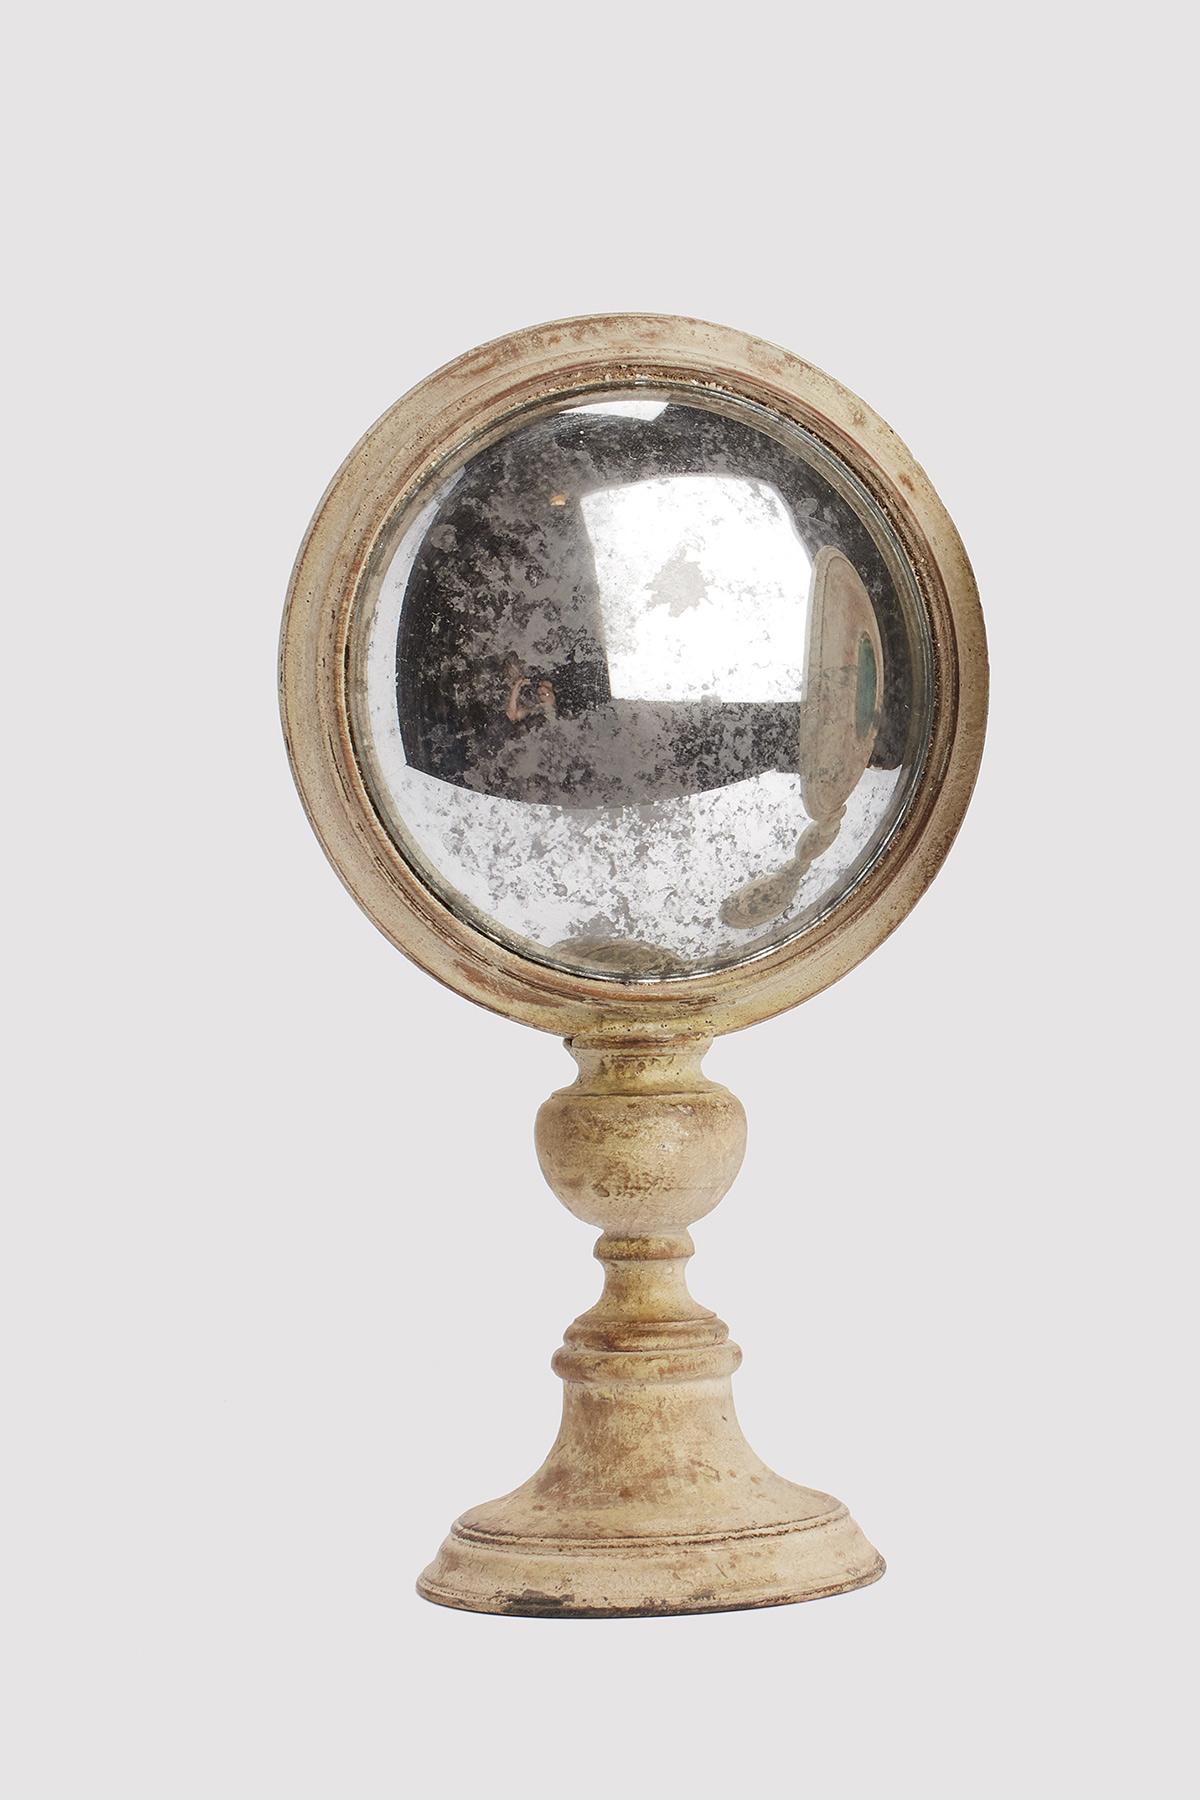 Ein runder gewölbter Wunderkammer-Spiegel mit weißem Holzrahmen, montiert auf einem runden weißen Holzsockel. Auf der Rückseite des Rahmens befindet sich ein runder Malachitstein. Italien um 1870.